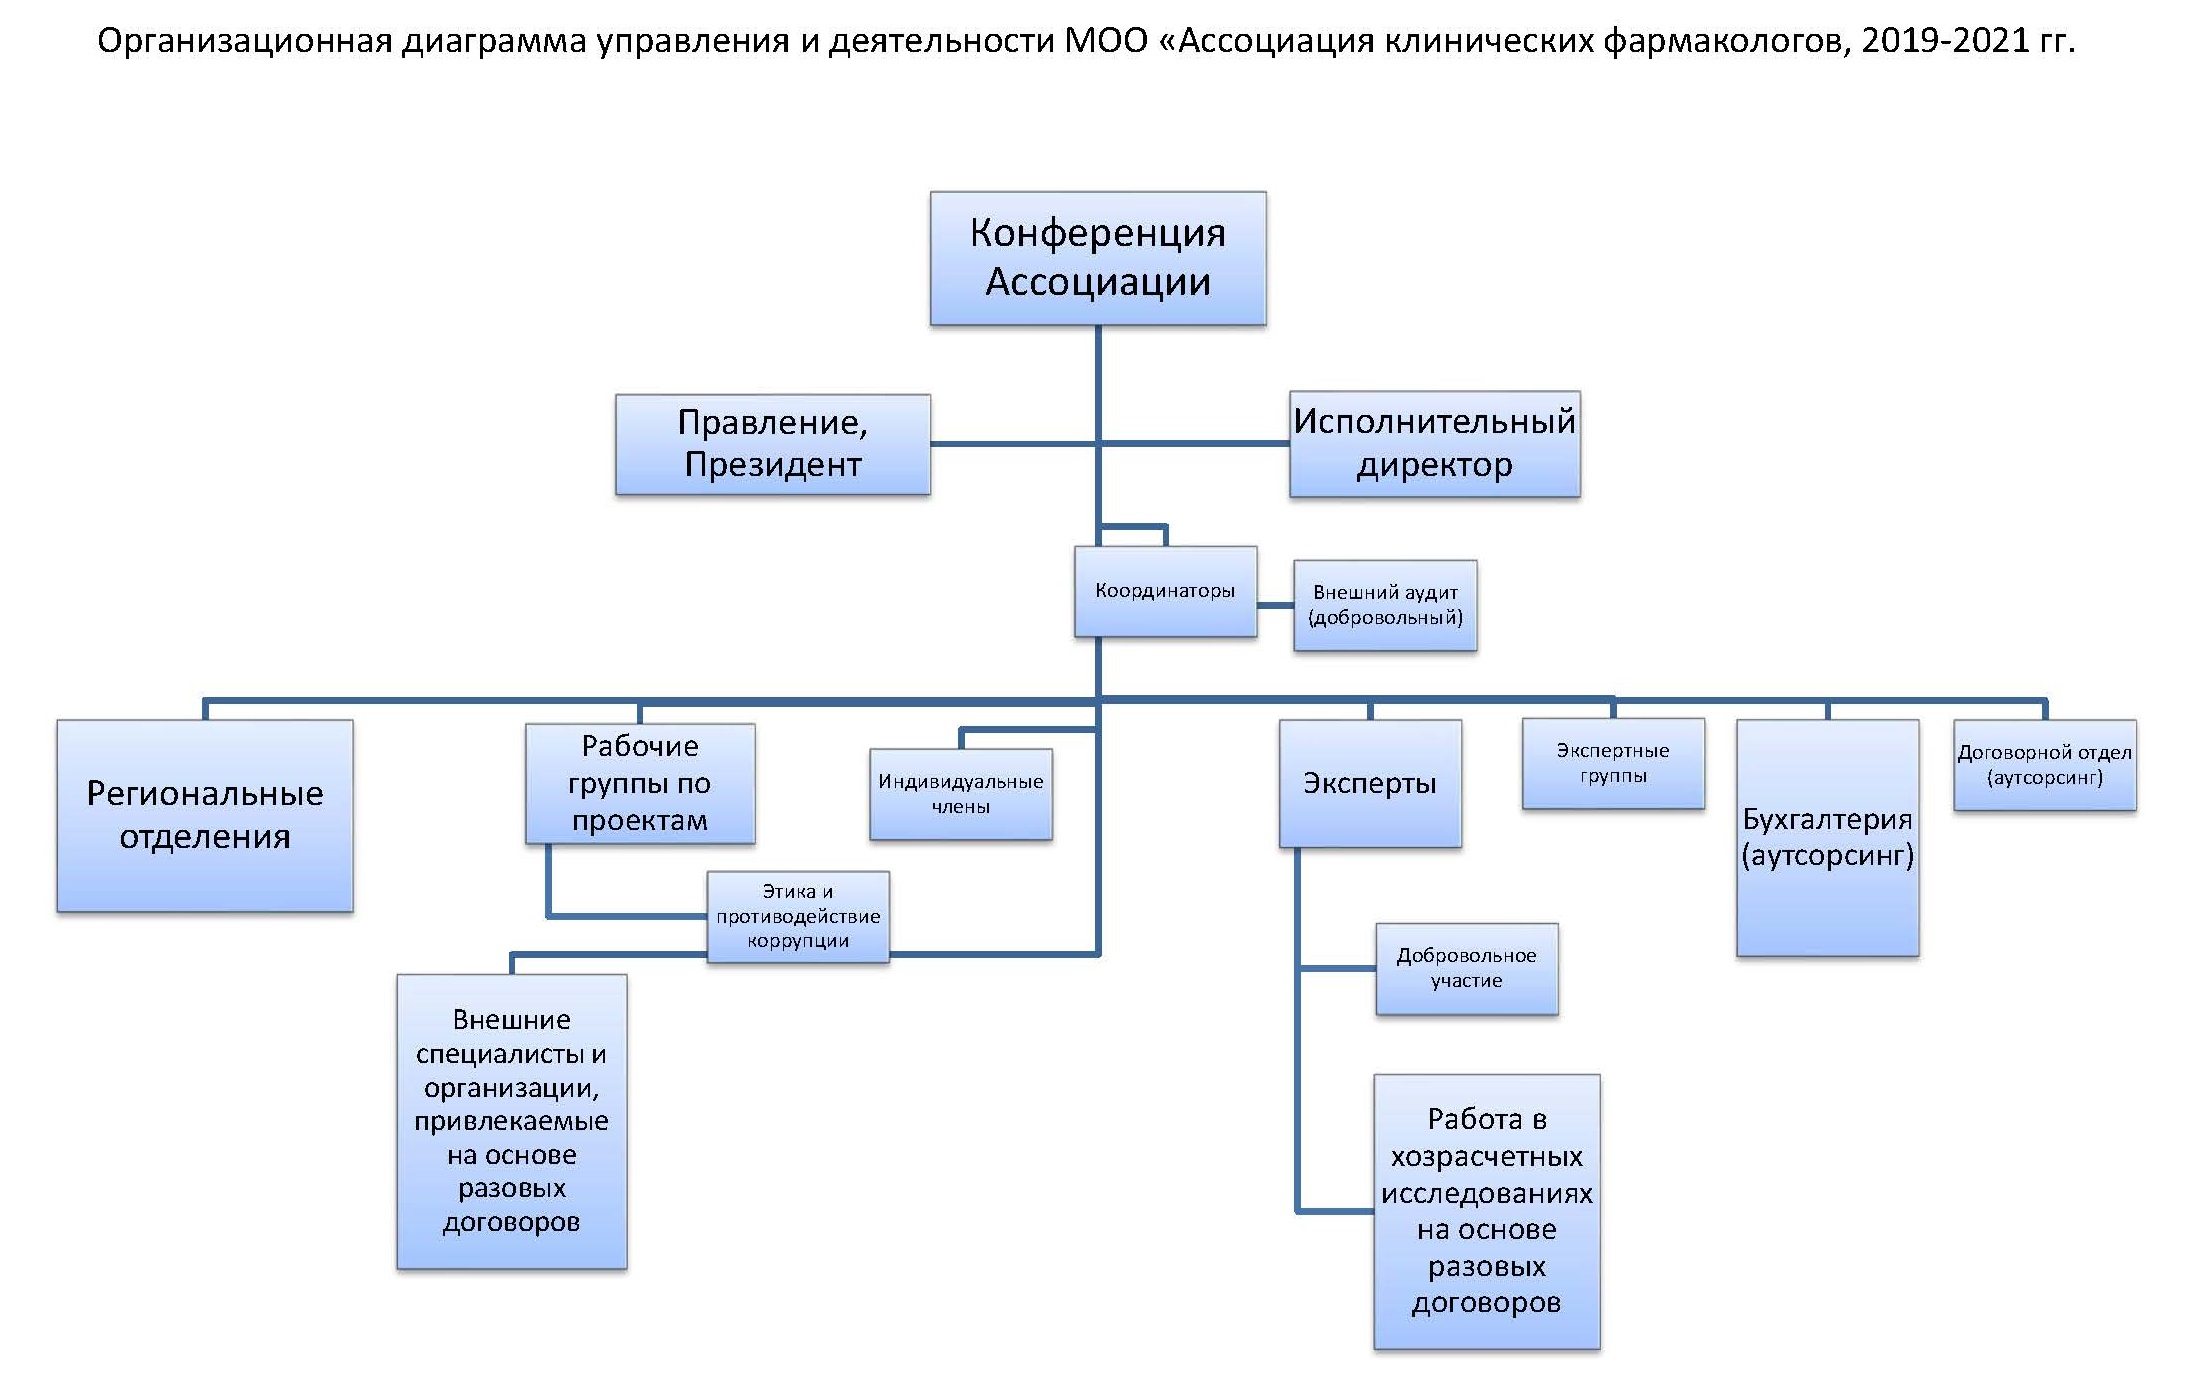 Организационная структура АКФ